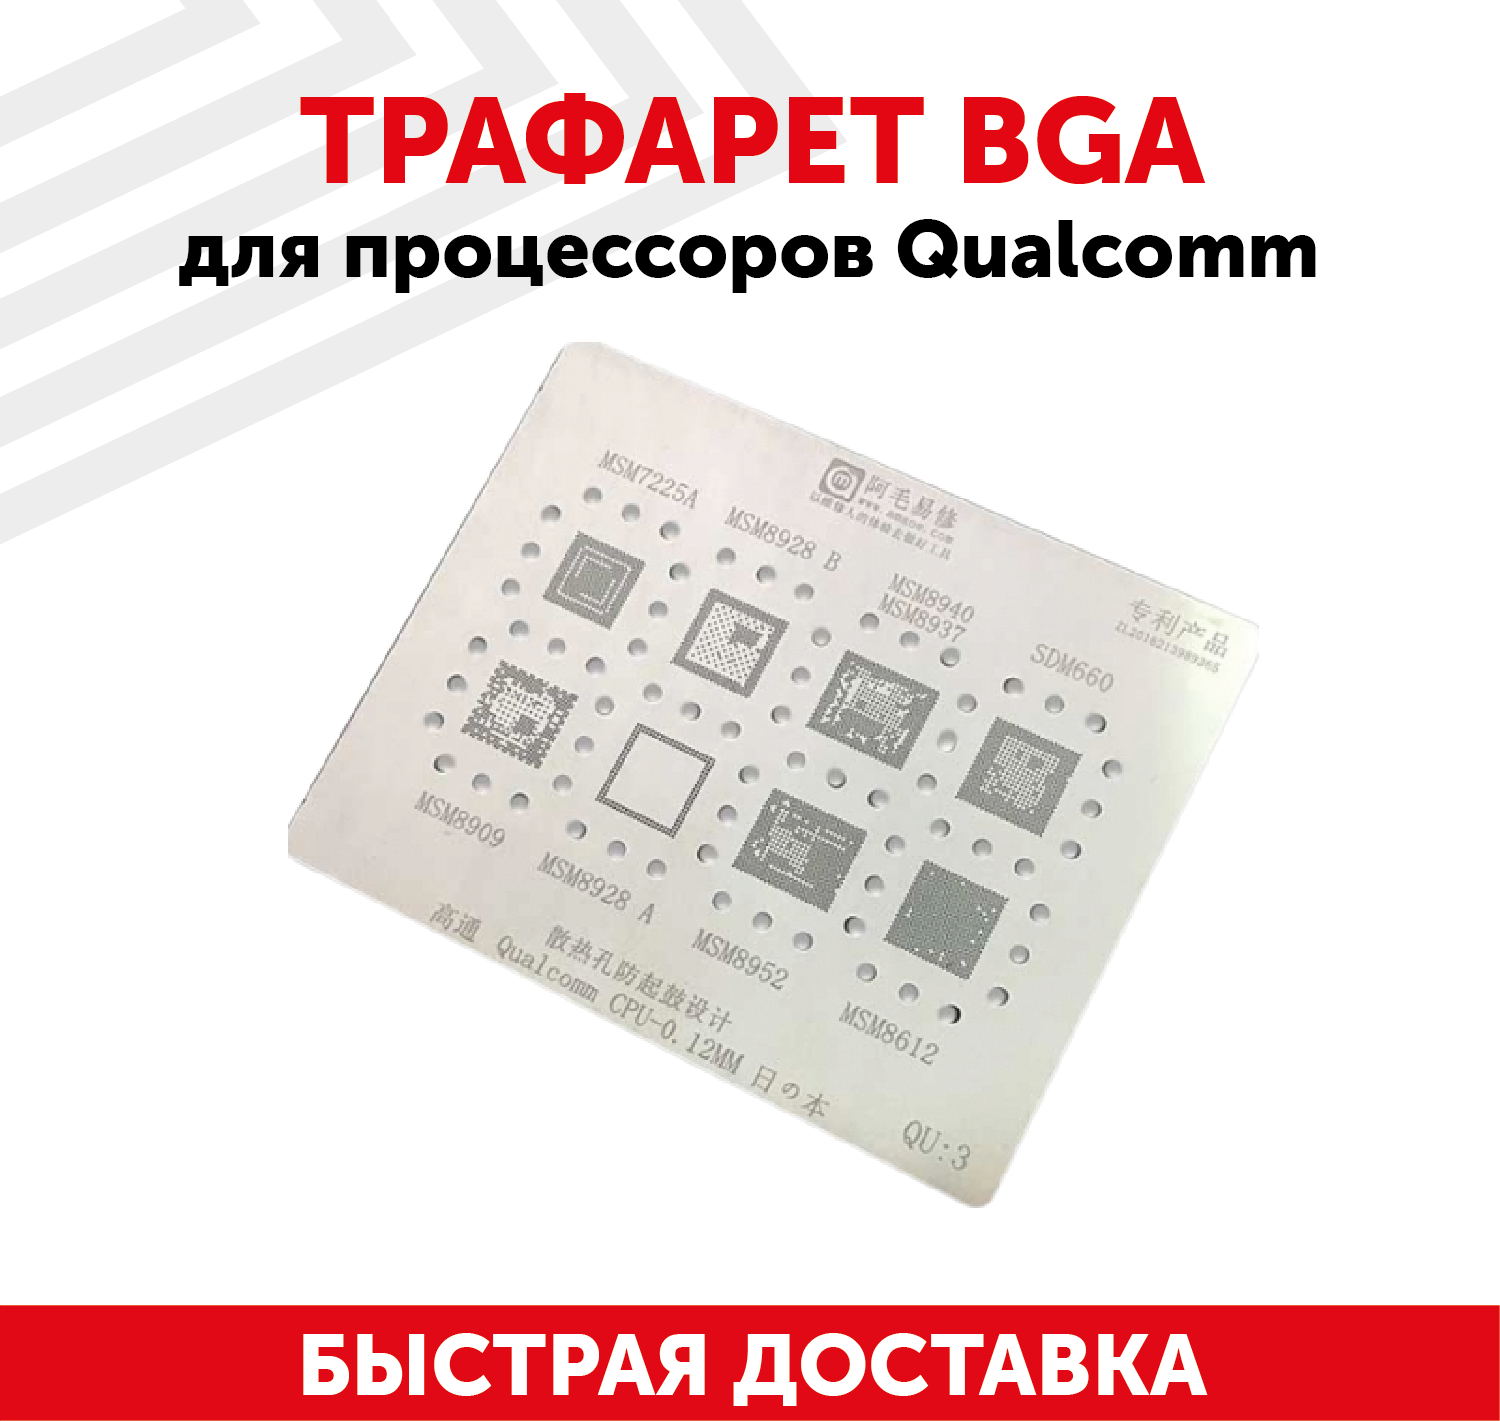 Трафарет BGA для процессоров Qualcomm